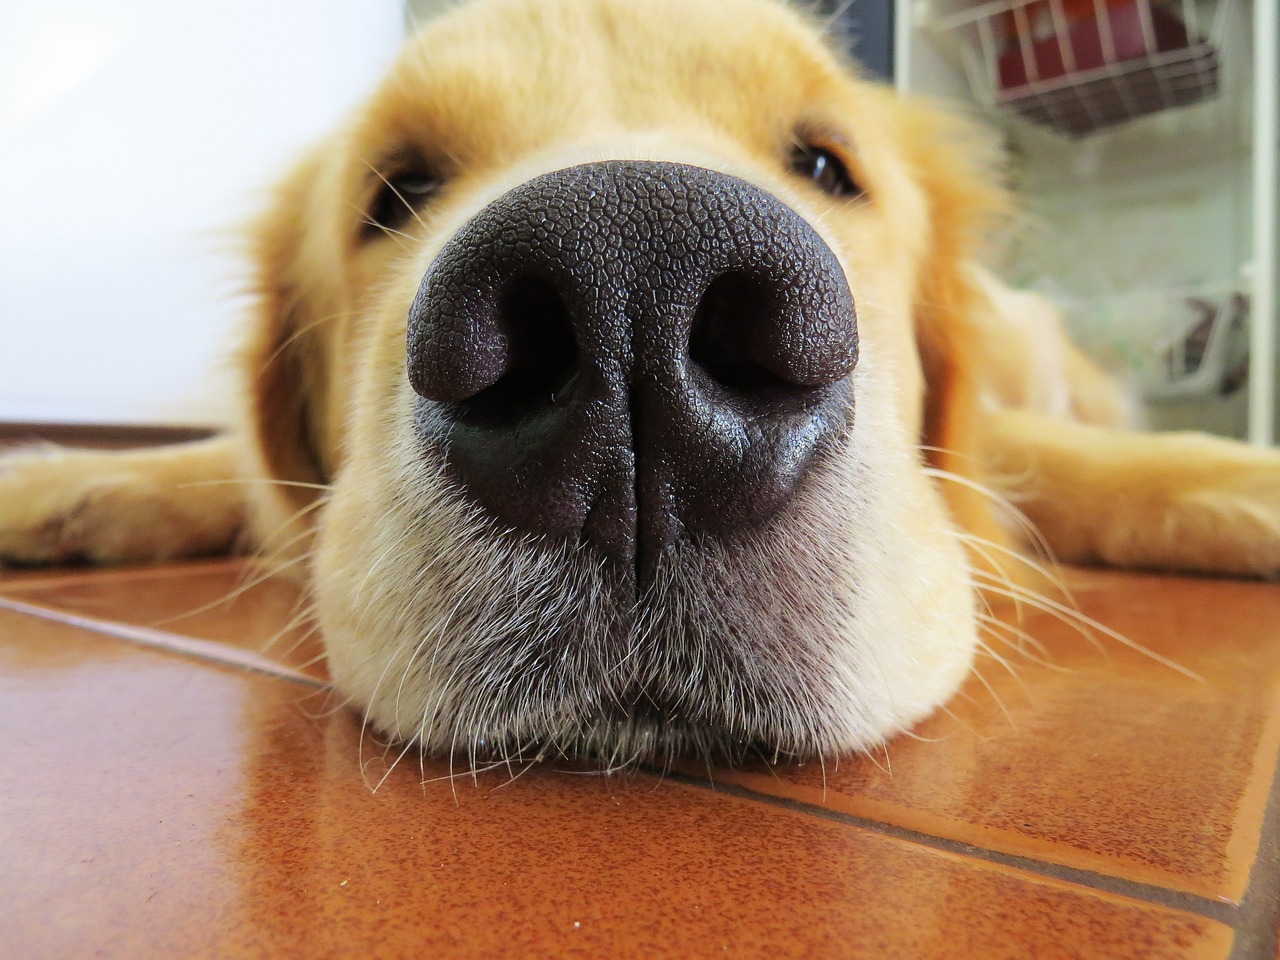 Η μύτη του σκύλου πρέπει να είναι υγρή ή ξηρή; - Πότε τον πάμε στον κτηνίατρο